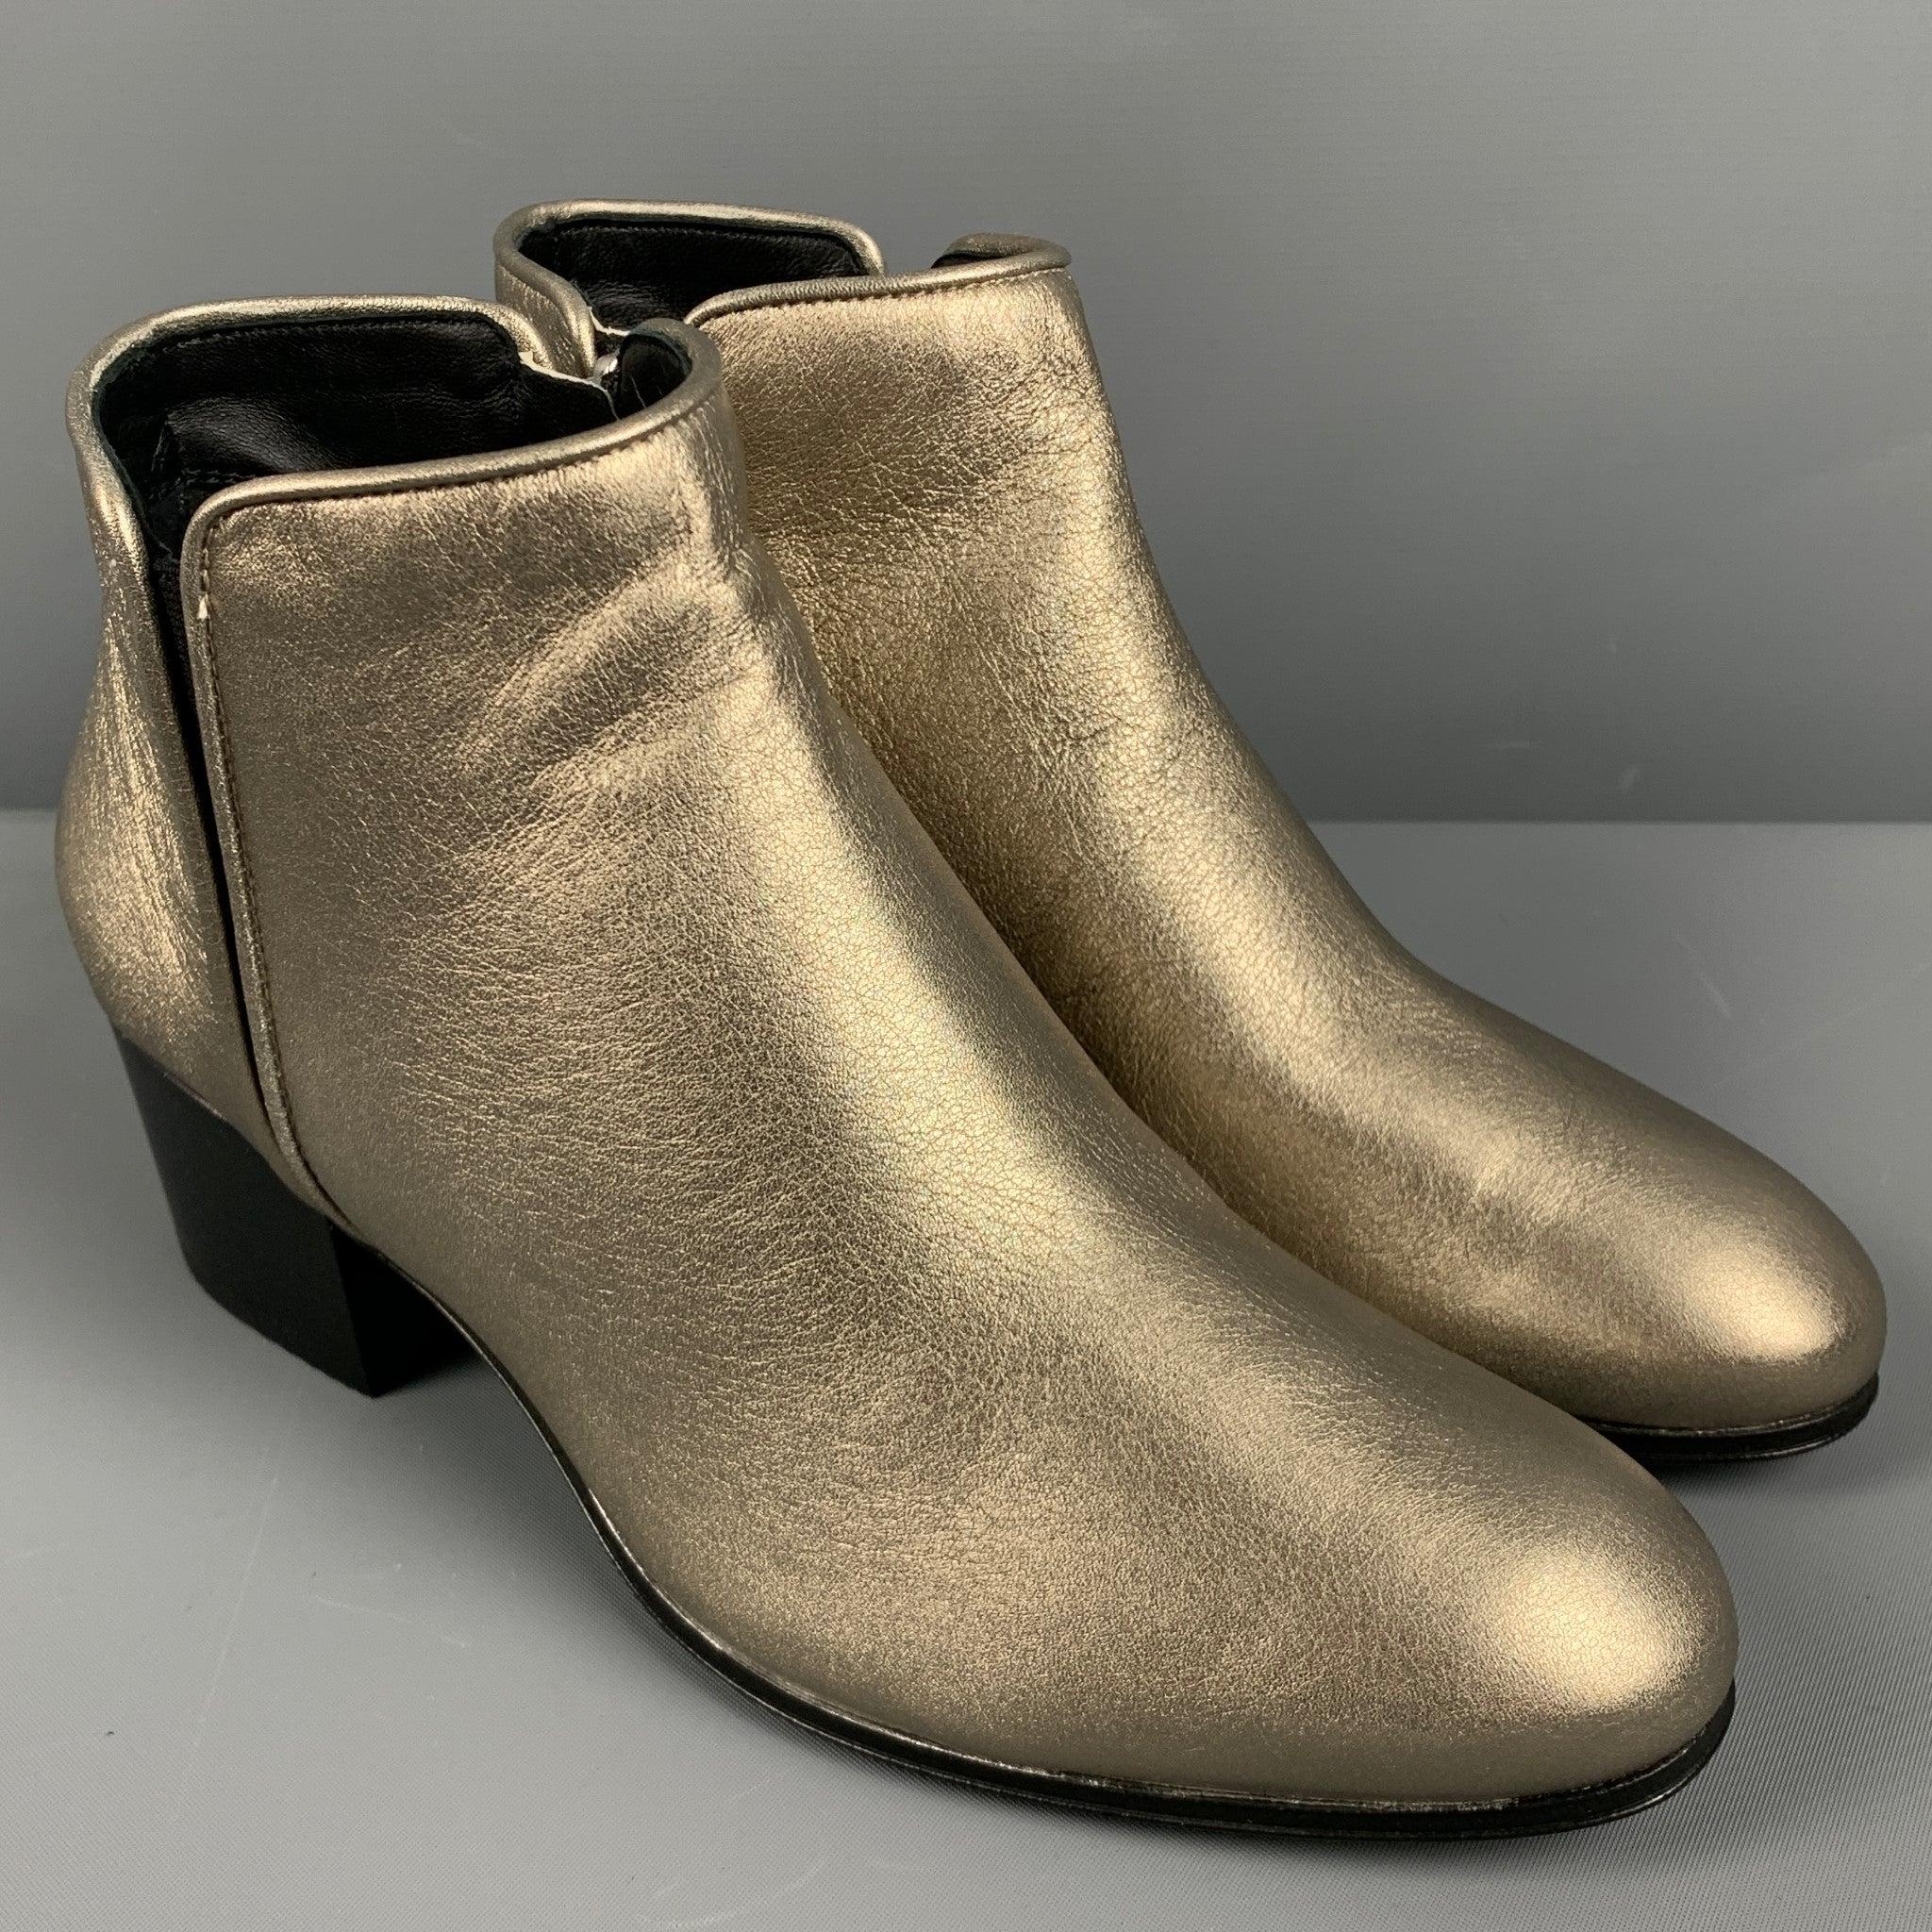 GIUSEPPE ZANOTTI-Stiefel
aus silbernem Metallic-Leder, mit Knöchelschnitt, klobigem Absatz und seitlichem Reißverschluss. Kommt mit Box und Staubbeutel.Neu mit Box. 

Markiert:   35 

Abmessungen: 
  Länge: 9 Zoll Breite: 3 Zoll Höhe: 5,25 Zoll 
  
